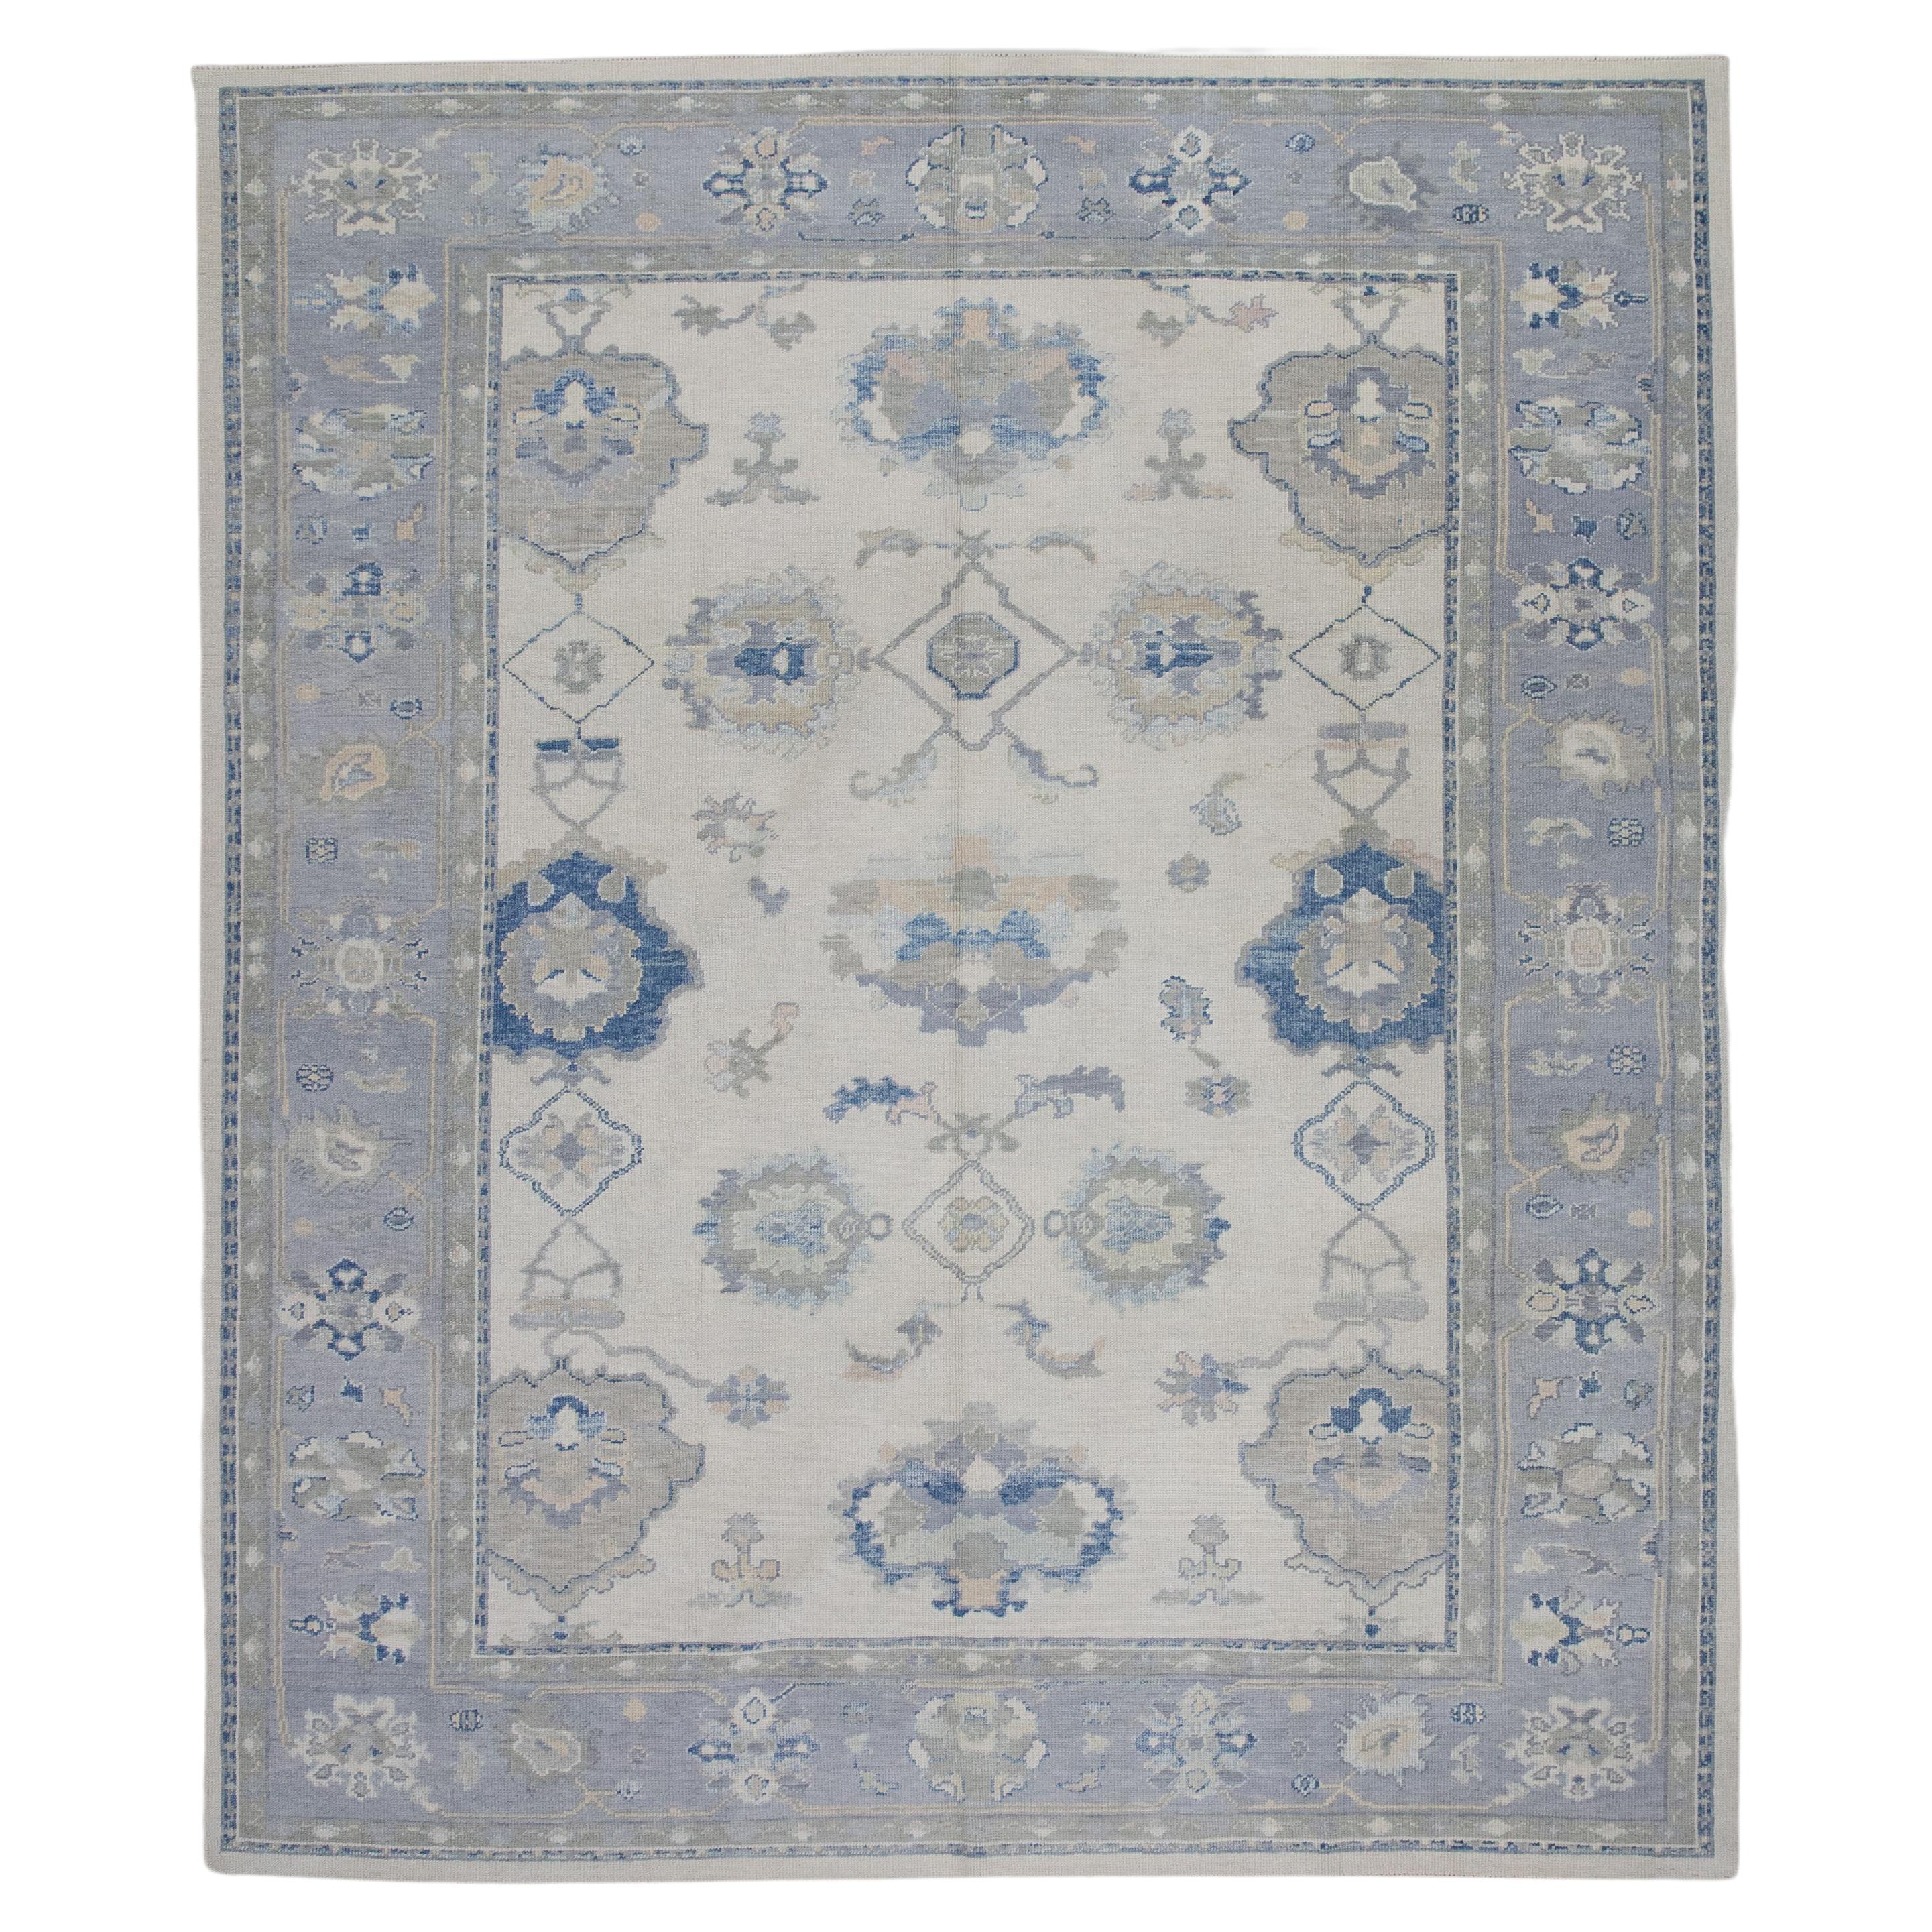 Handgewebter türkischer Oushak-Teppich aus Wolle in Creme & Blau mit Blumenmuster 9'4" X 11'7"